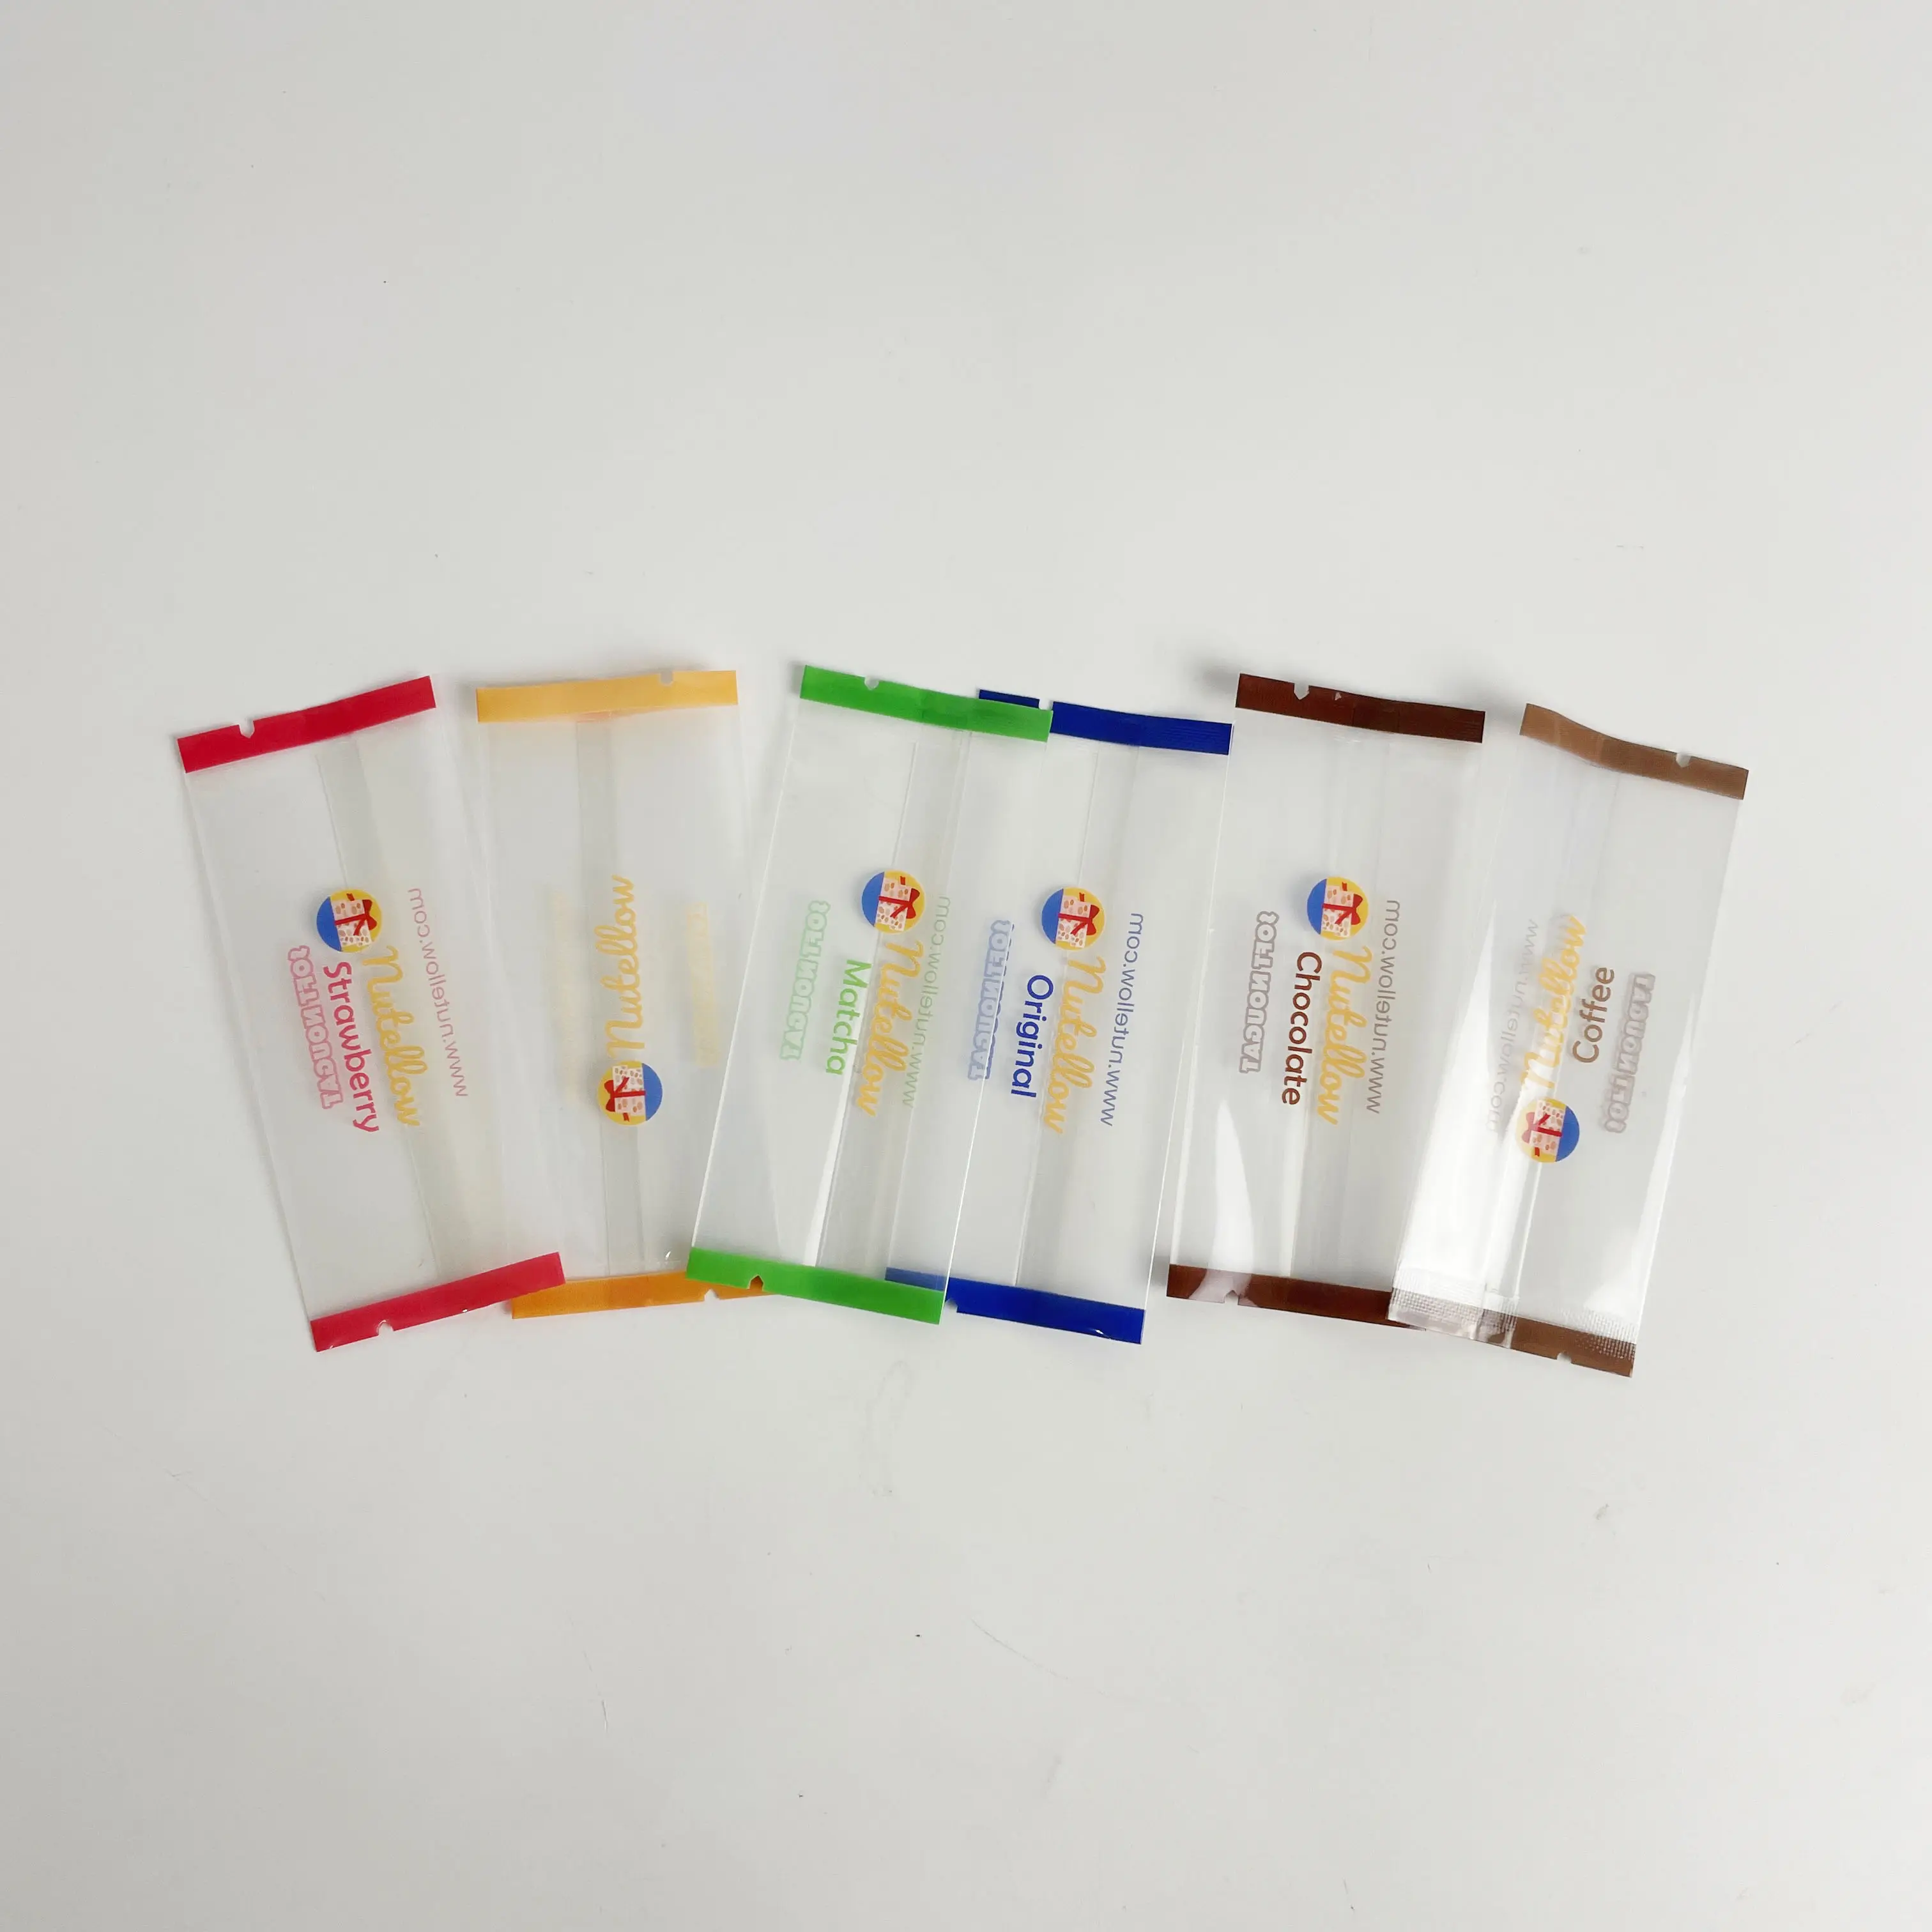 Kunden spezifisches Design laminiertes Material Snack verpackung Rück siegel beutel für Schokoladen plastik beutel